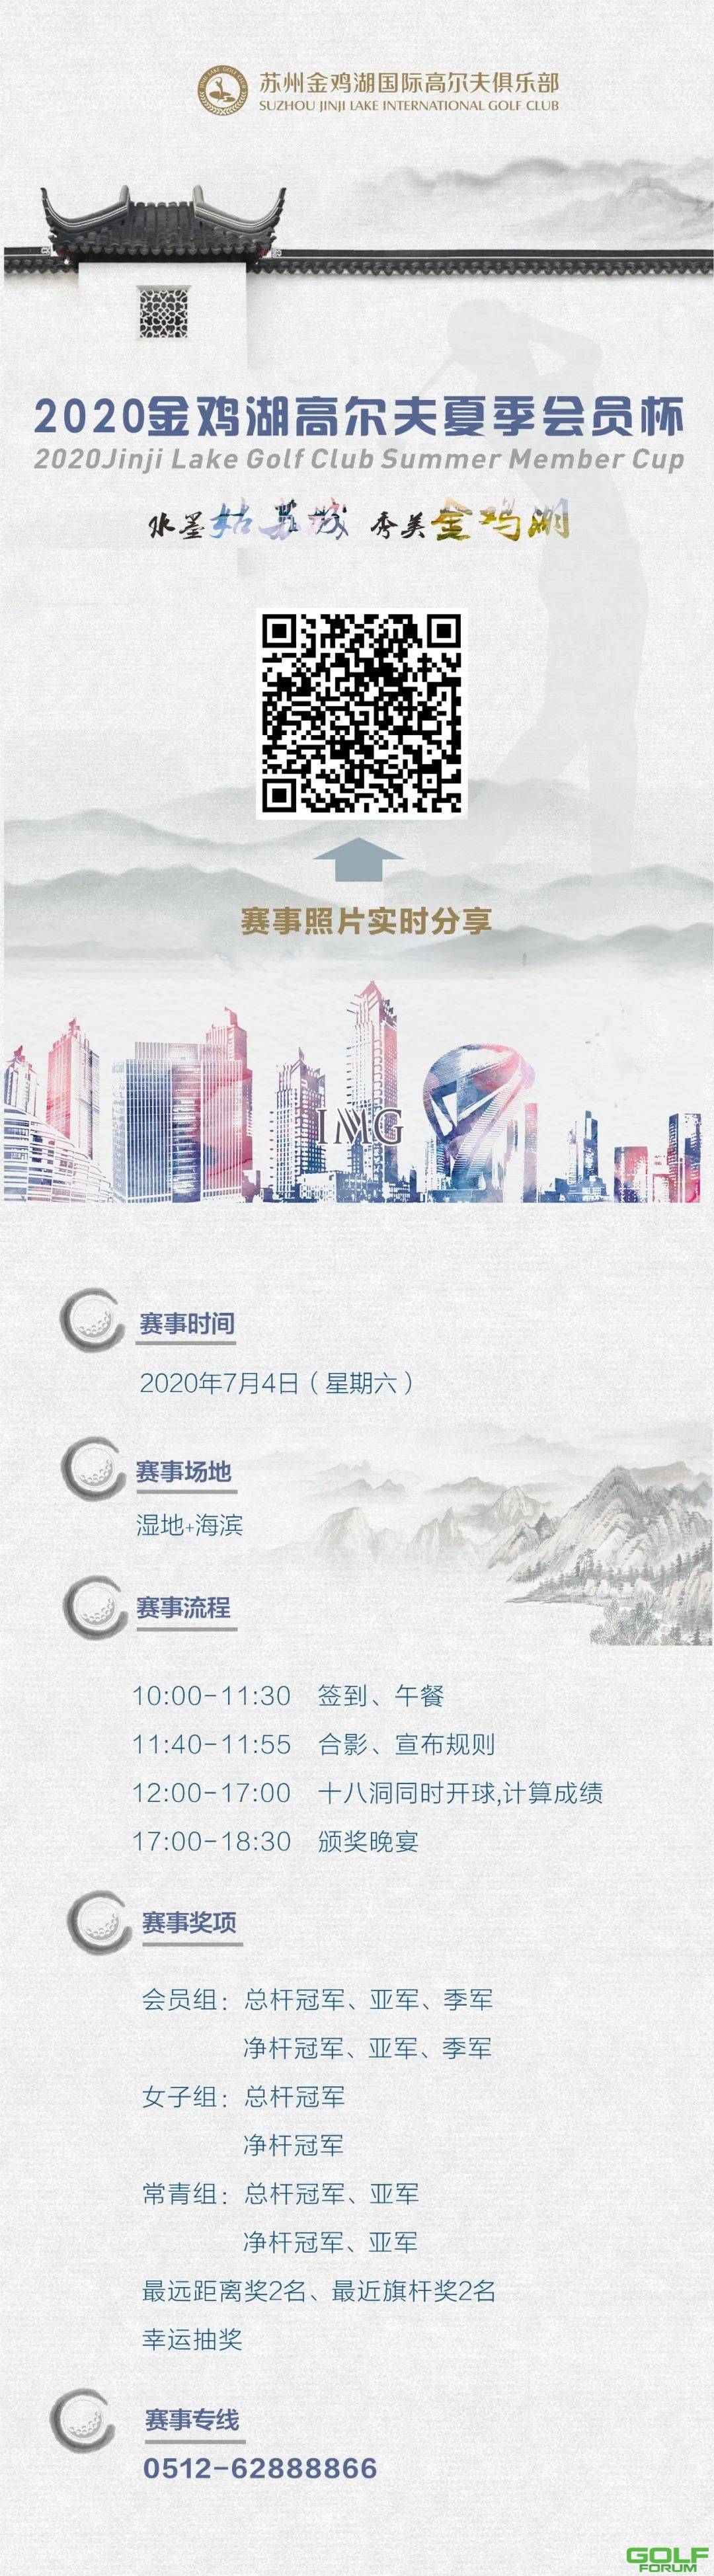 赛事预告I2020金鸡湖夏季会员杯开战在即